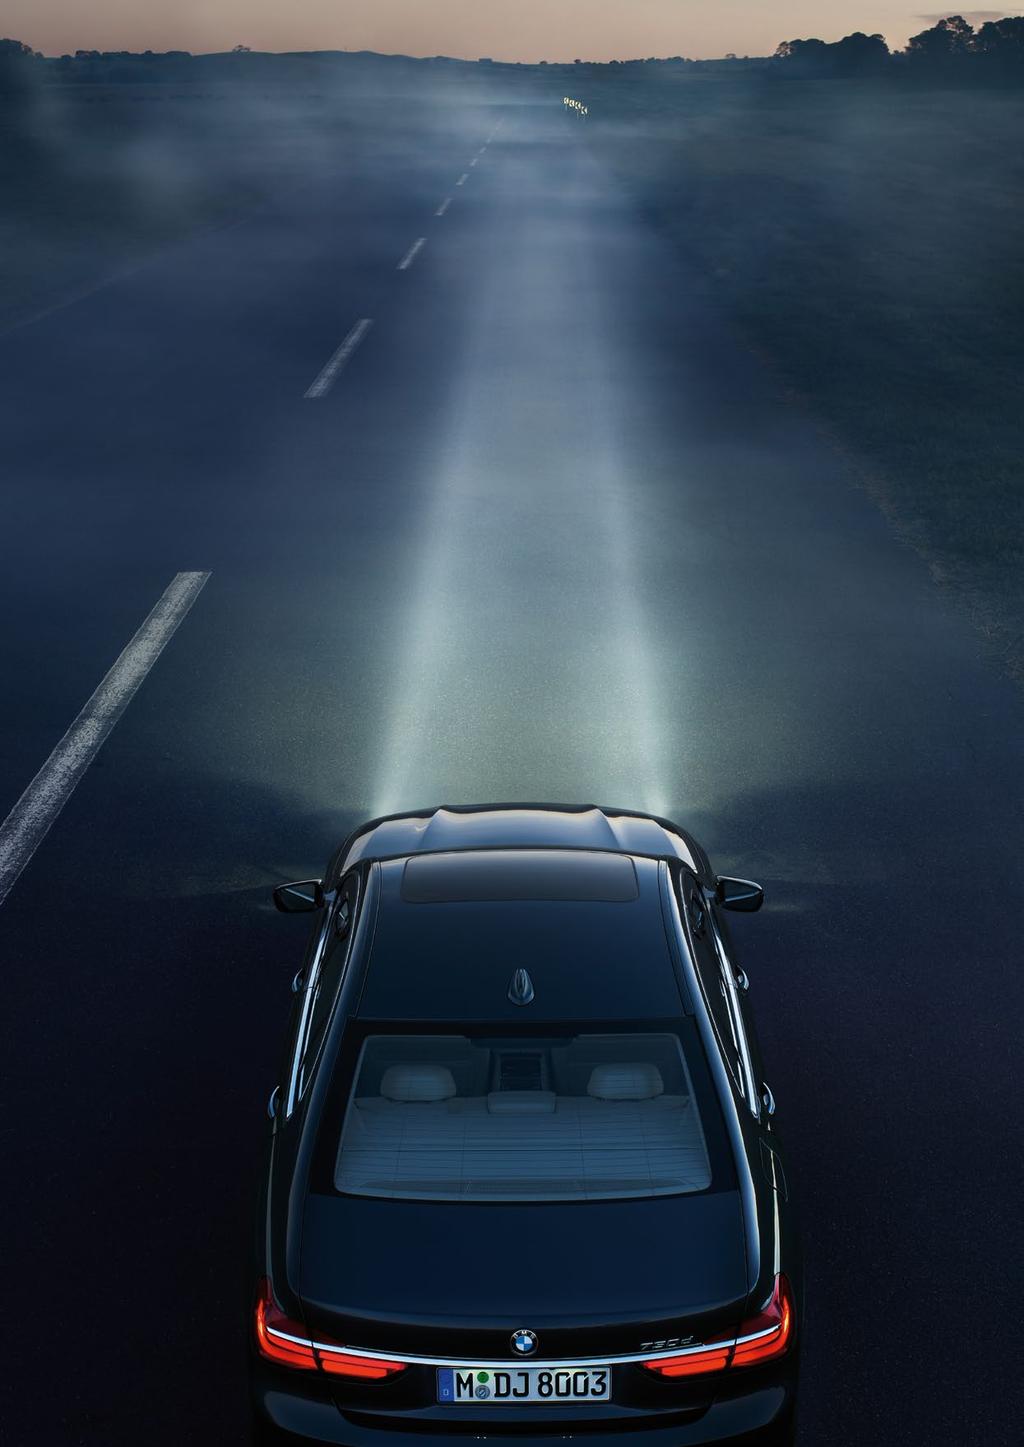 레이저라이트. 넓은시야의확보로안전성을높이는기술. 국내최초로 BMW 7 시리즈에적용된 BMW 레이저라이트는기존보다 10 배높은광도와확장된가시성으로최대 600m 까지조명을비춰줍니다. 이로인해운전자의야간전방시야는더넓어지고안전성은크게증가됩니다.